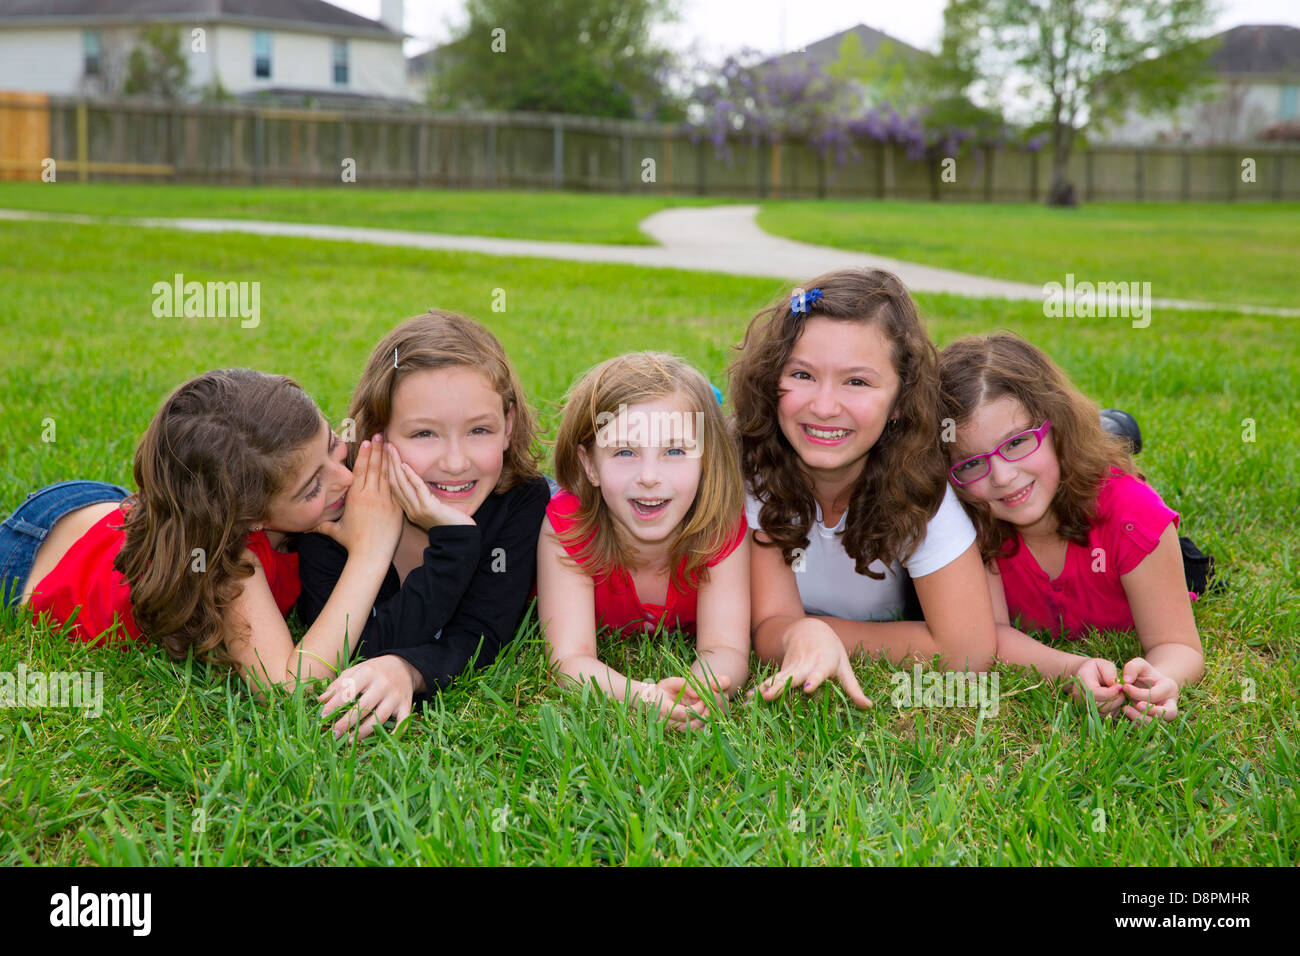 Groupe de filles enfants allongés sur l'herbe pelouse smiling heureux ensemble dans une rangée Banque D'Images